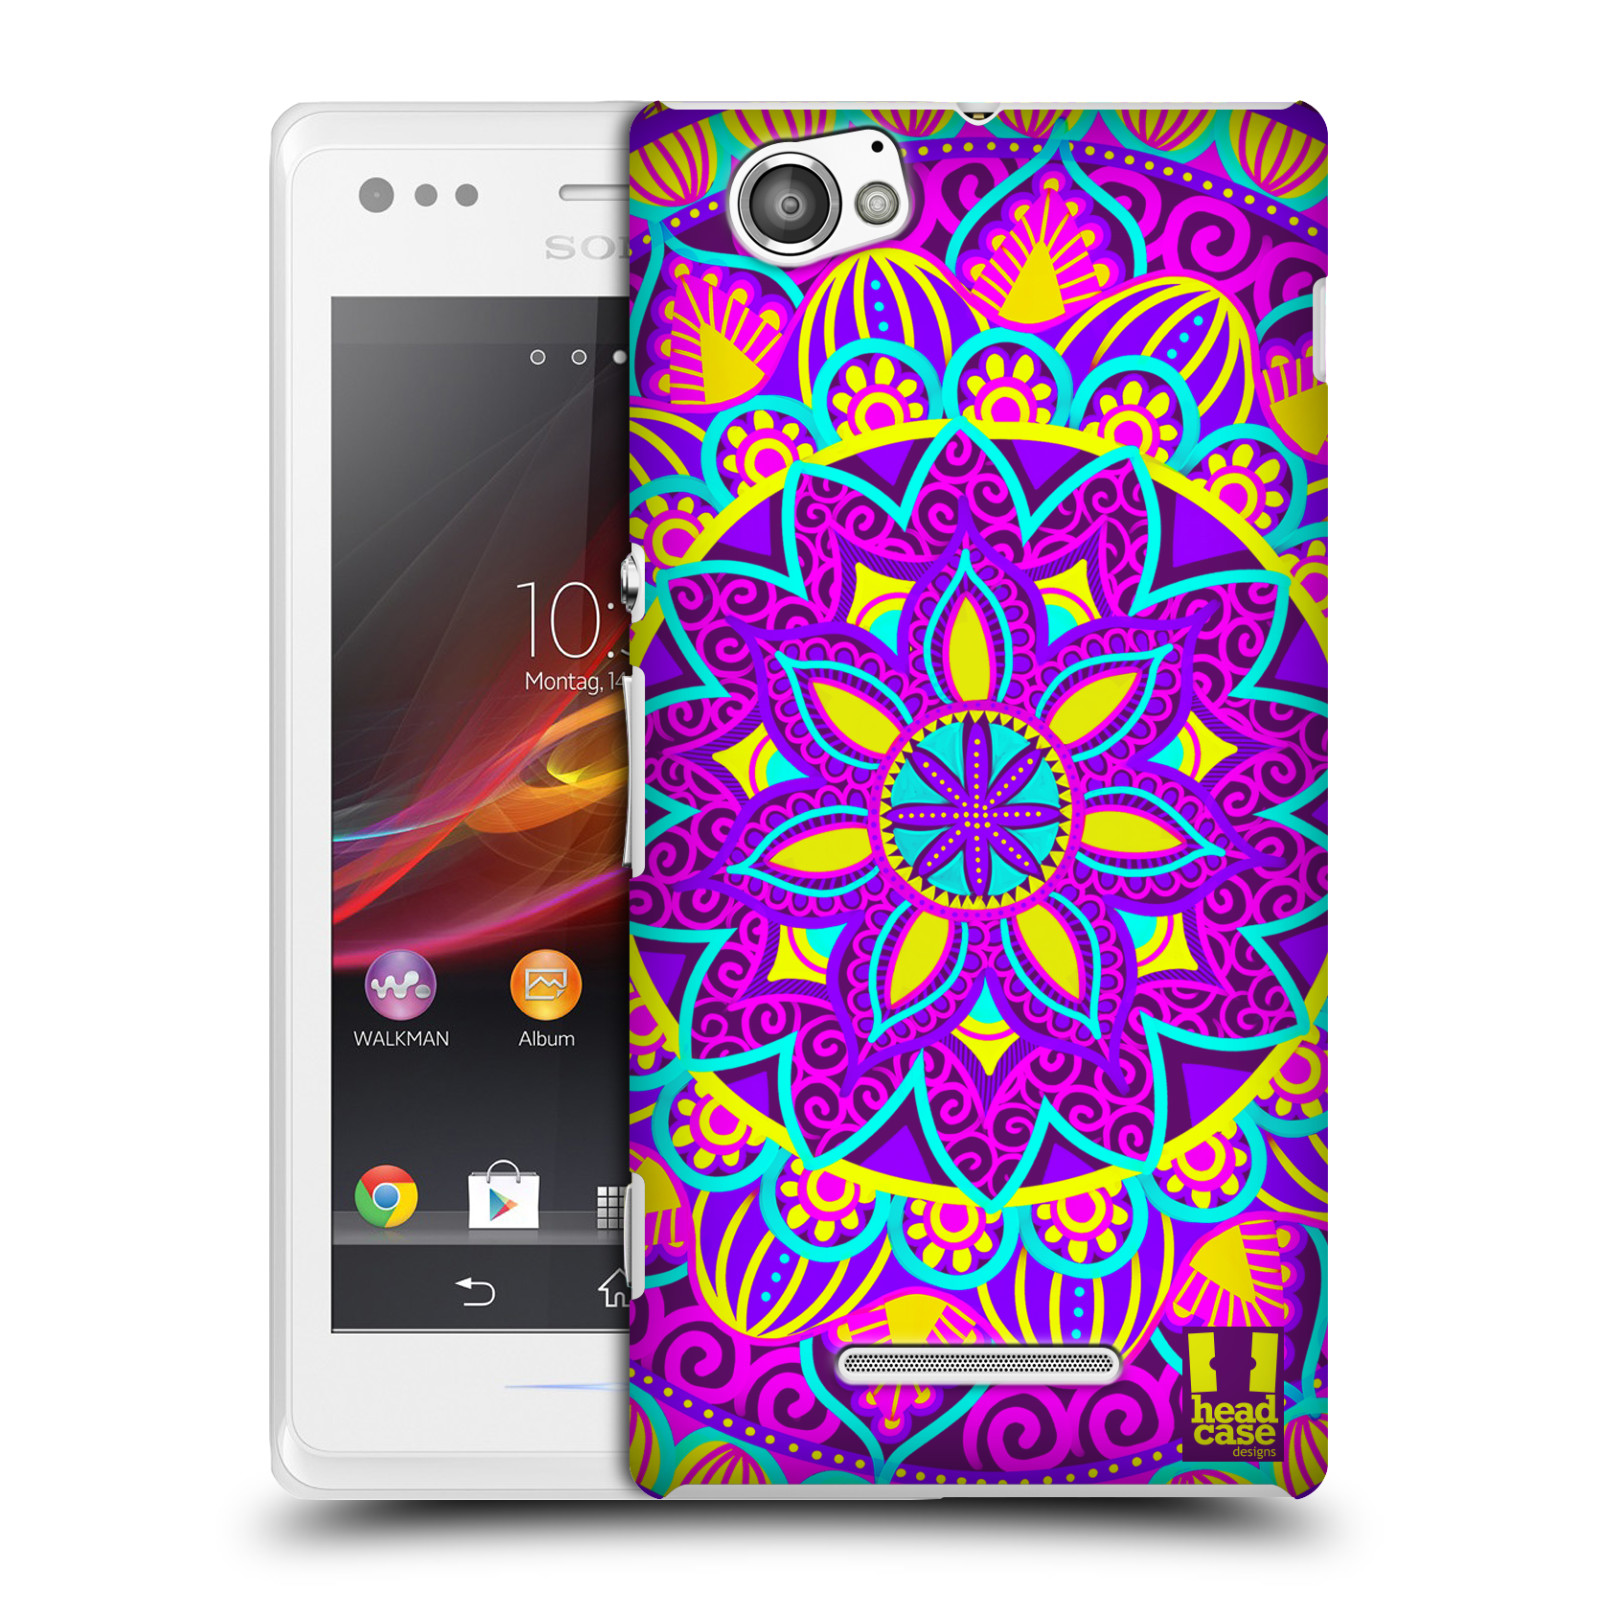 HEAD CASE plastový obal na mobil Sony Xperia M vzor Indie Mandala květinový motiv FIALOVÁ KVĚTINA